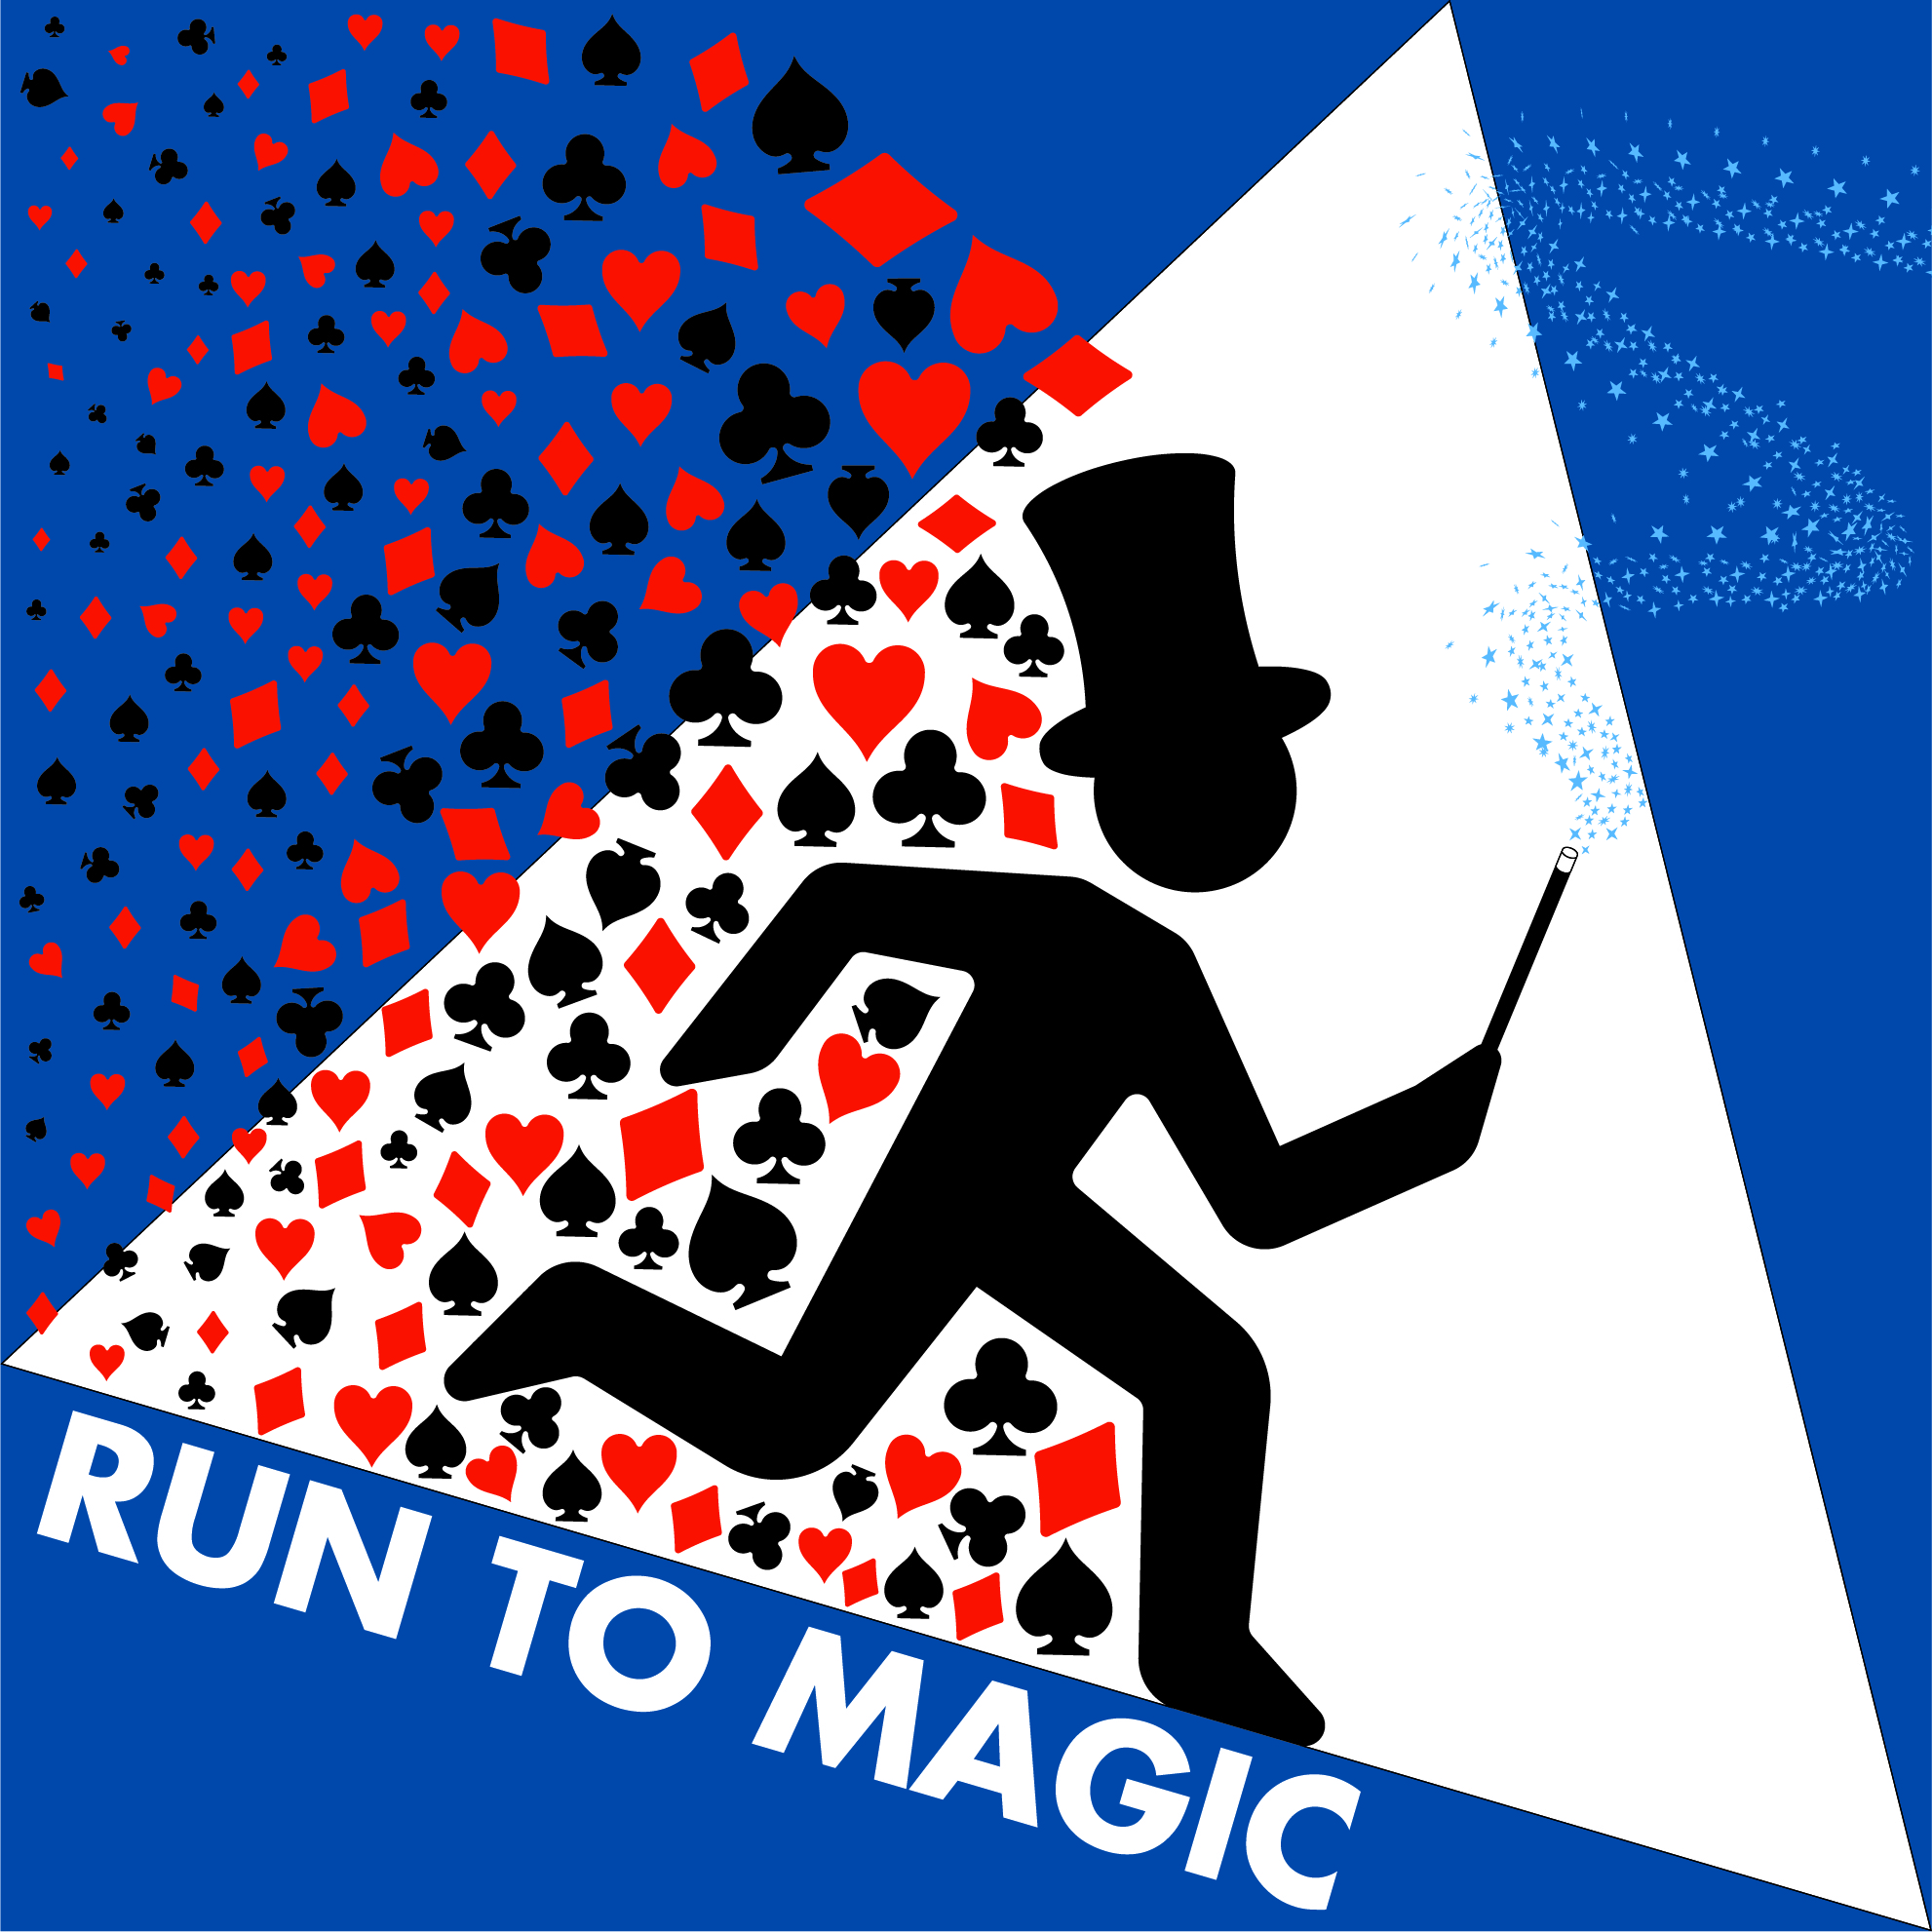 Vendita Giochi di Prestigio – Run To Magic